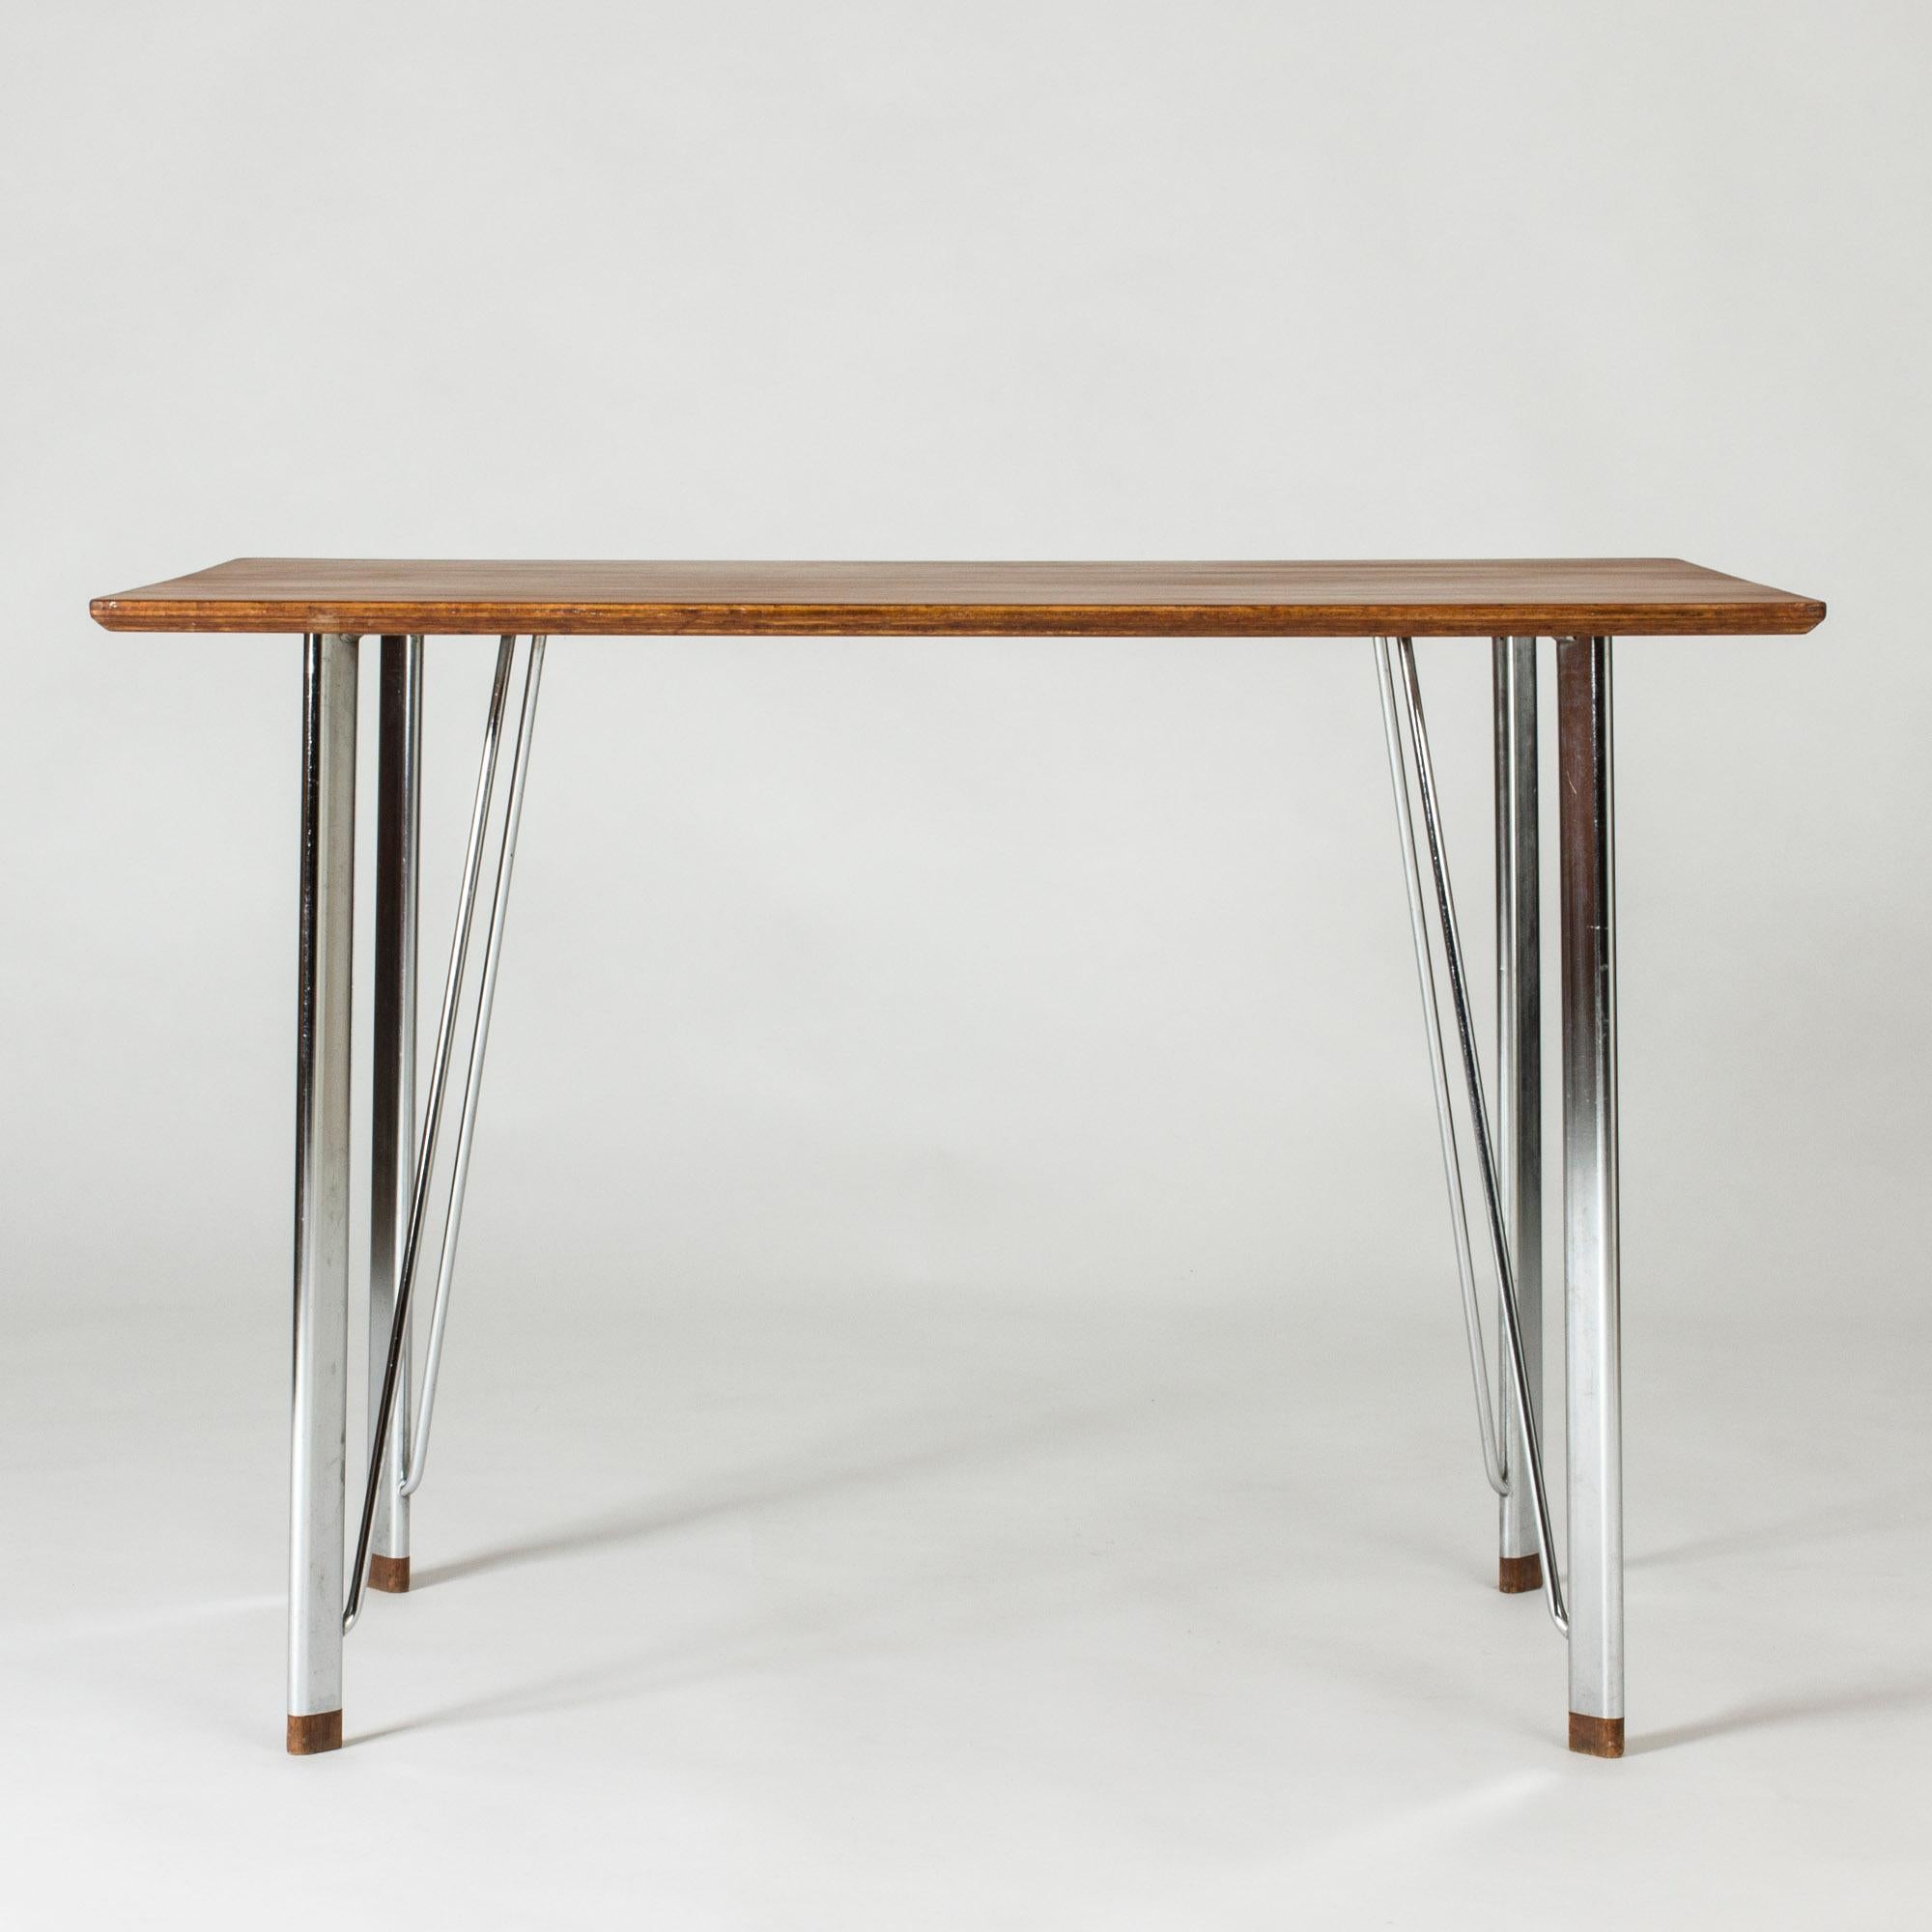 Bureau élégant et minimaliste d'Arne Jacobsen. Structure élégante en acier avec pieds en bois, magnifique plateau en teck. Belle taille.